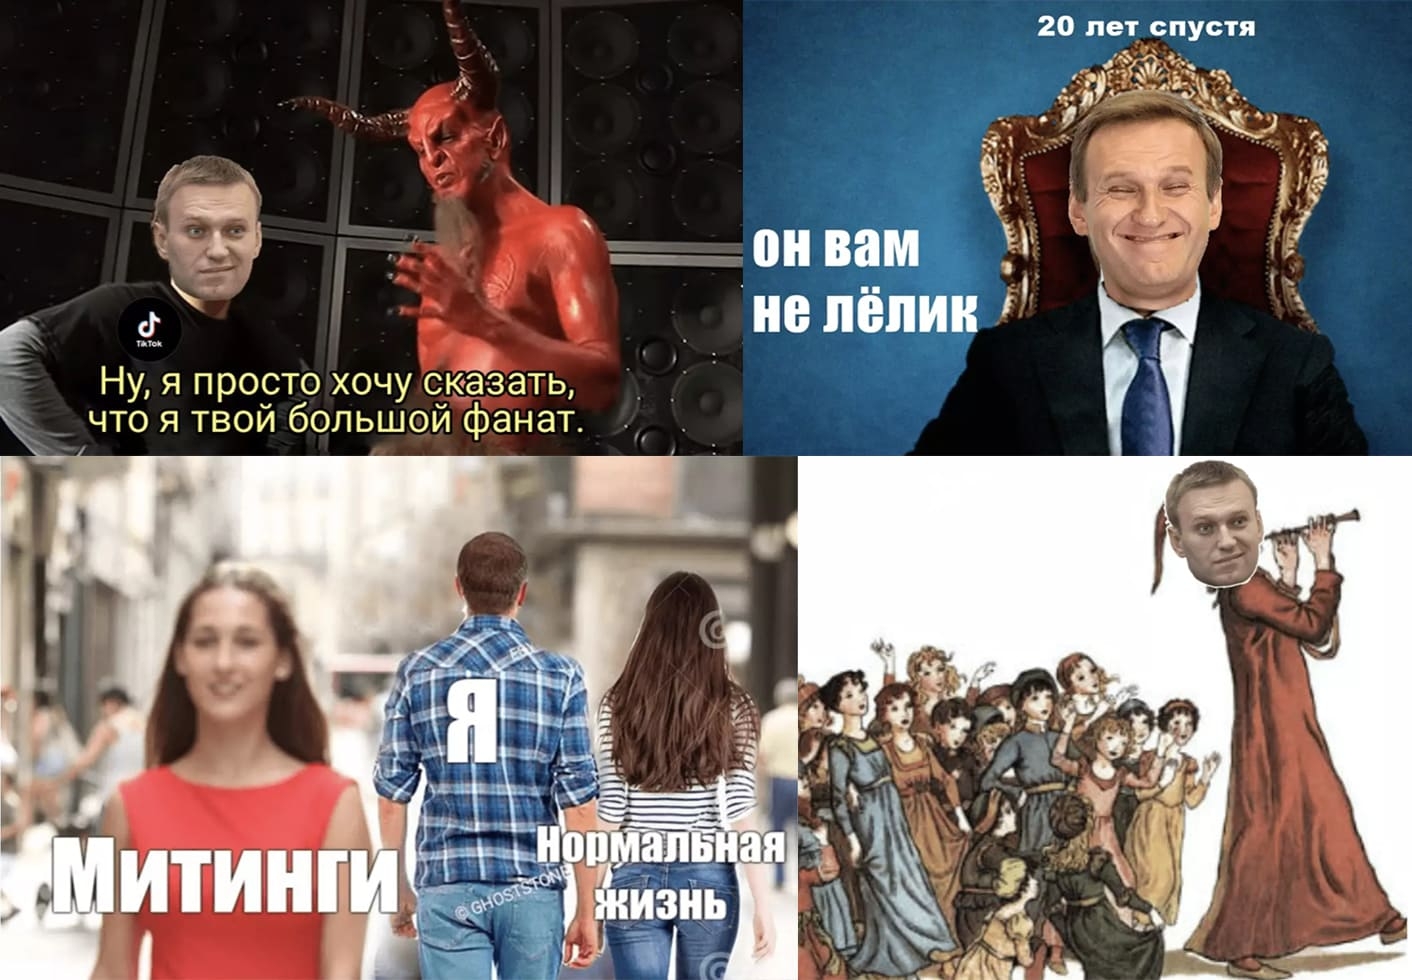 Алексей Нечаев "Новые люди" против оппозиции